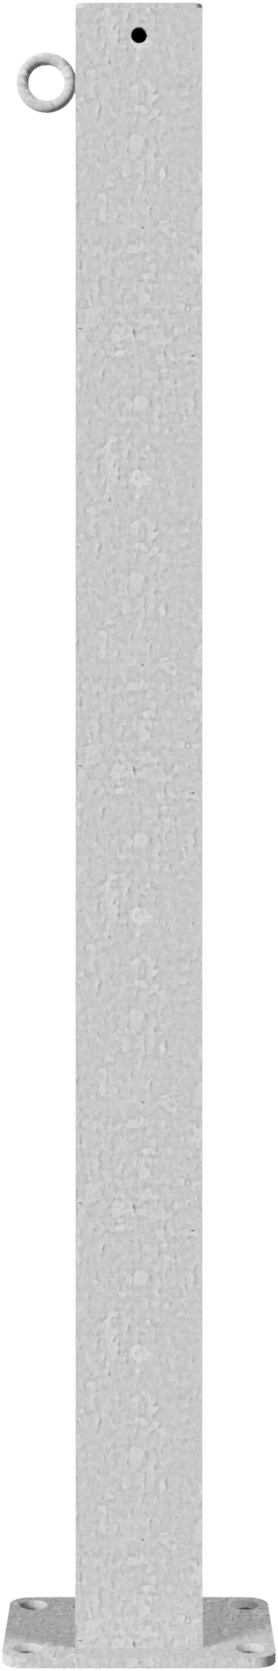 Schake Absperrkettenpfosten Endpfosten mit Öse OD 70 x 70 mm verzinkt